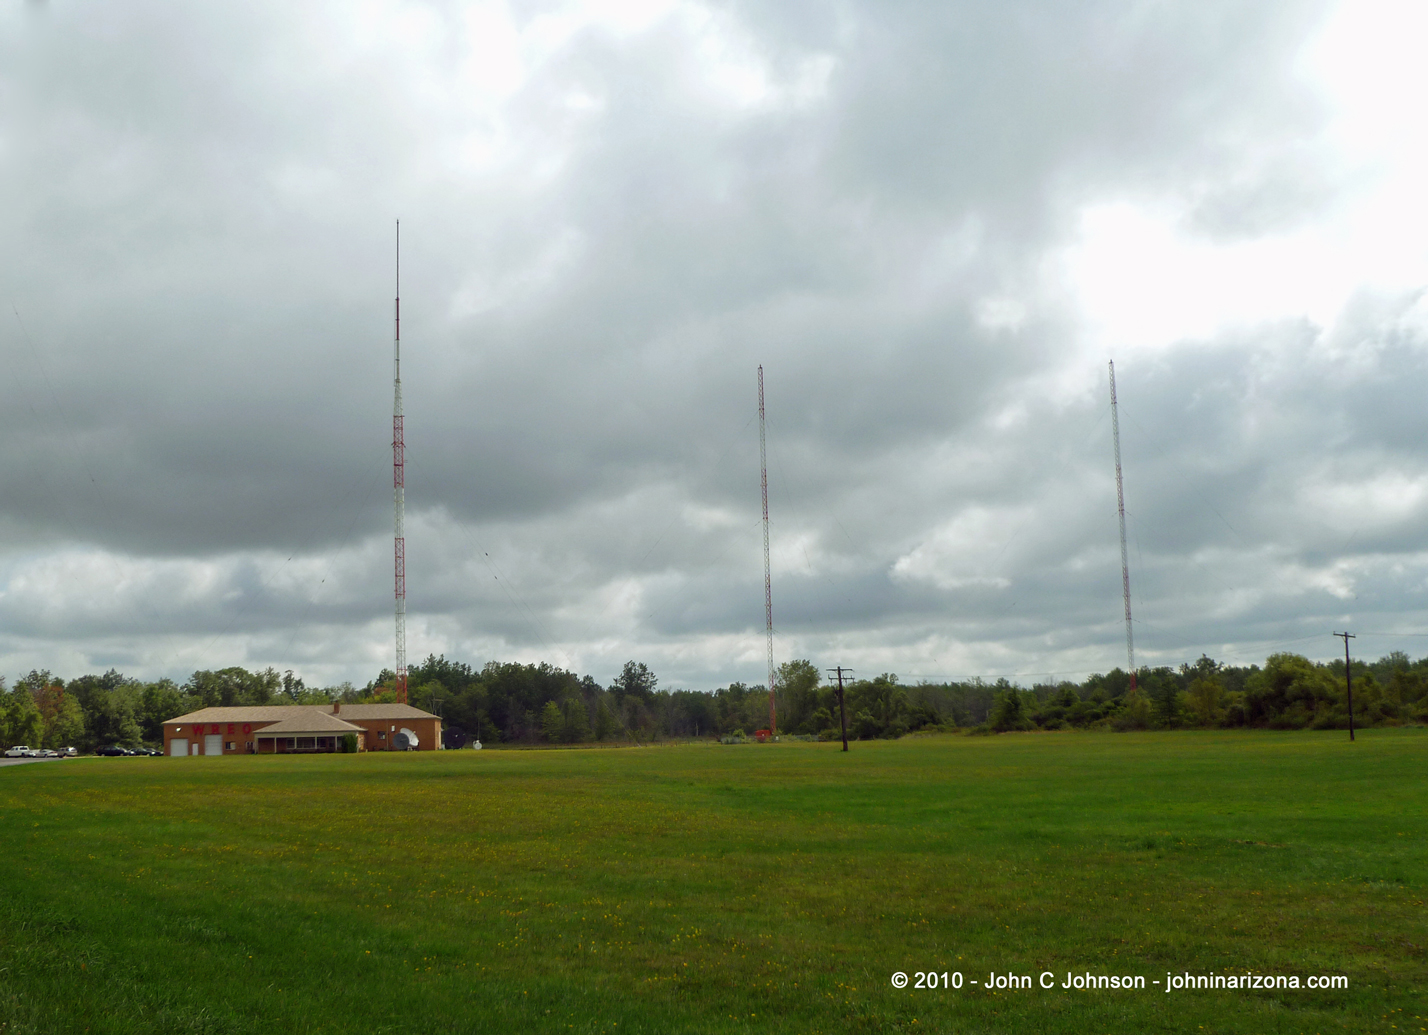 WREO FM 97.1 Ashtabula, Ohio